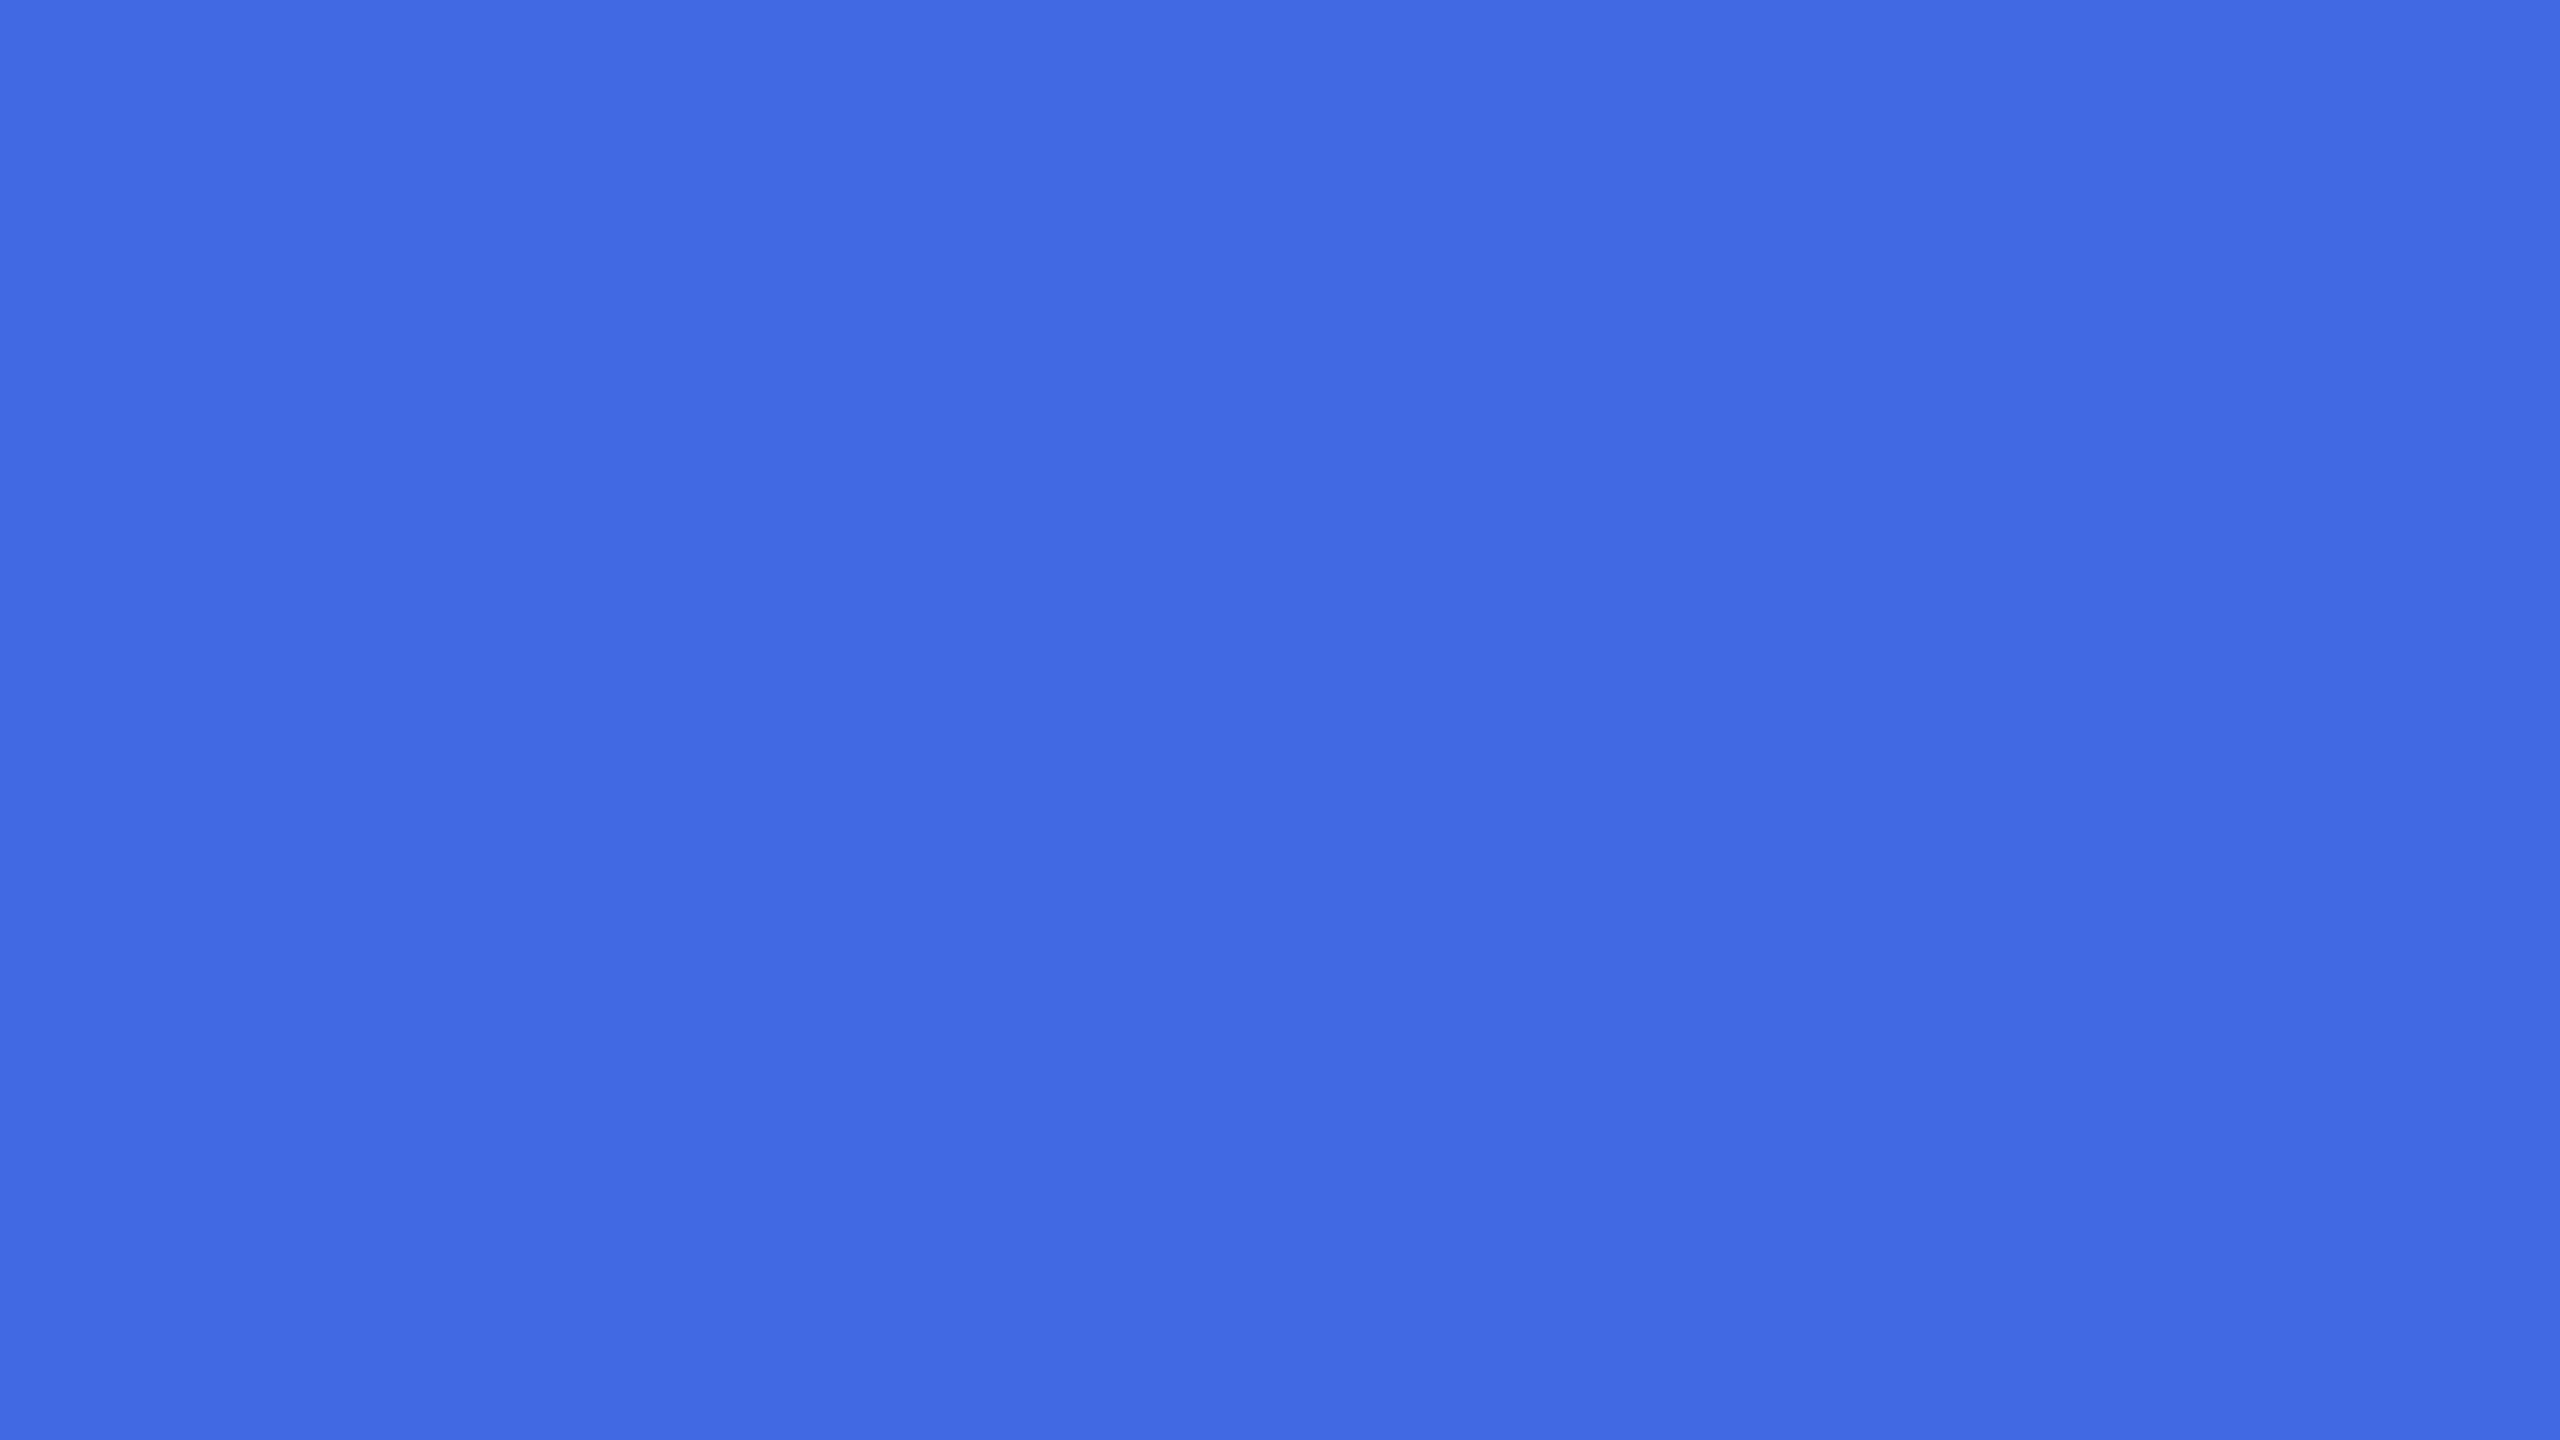 世界最大斯里兰卡皇家蓝蓝宝石110.13克拉古柏林证书投资收藏传承 深圳市罗湖区立信珠宝行网站